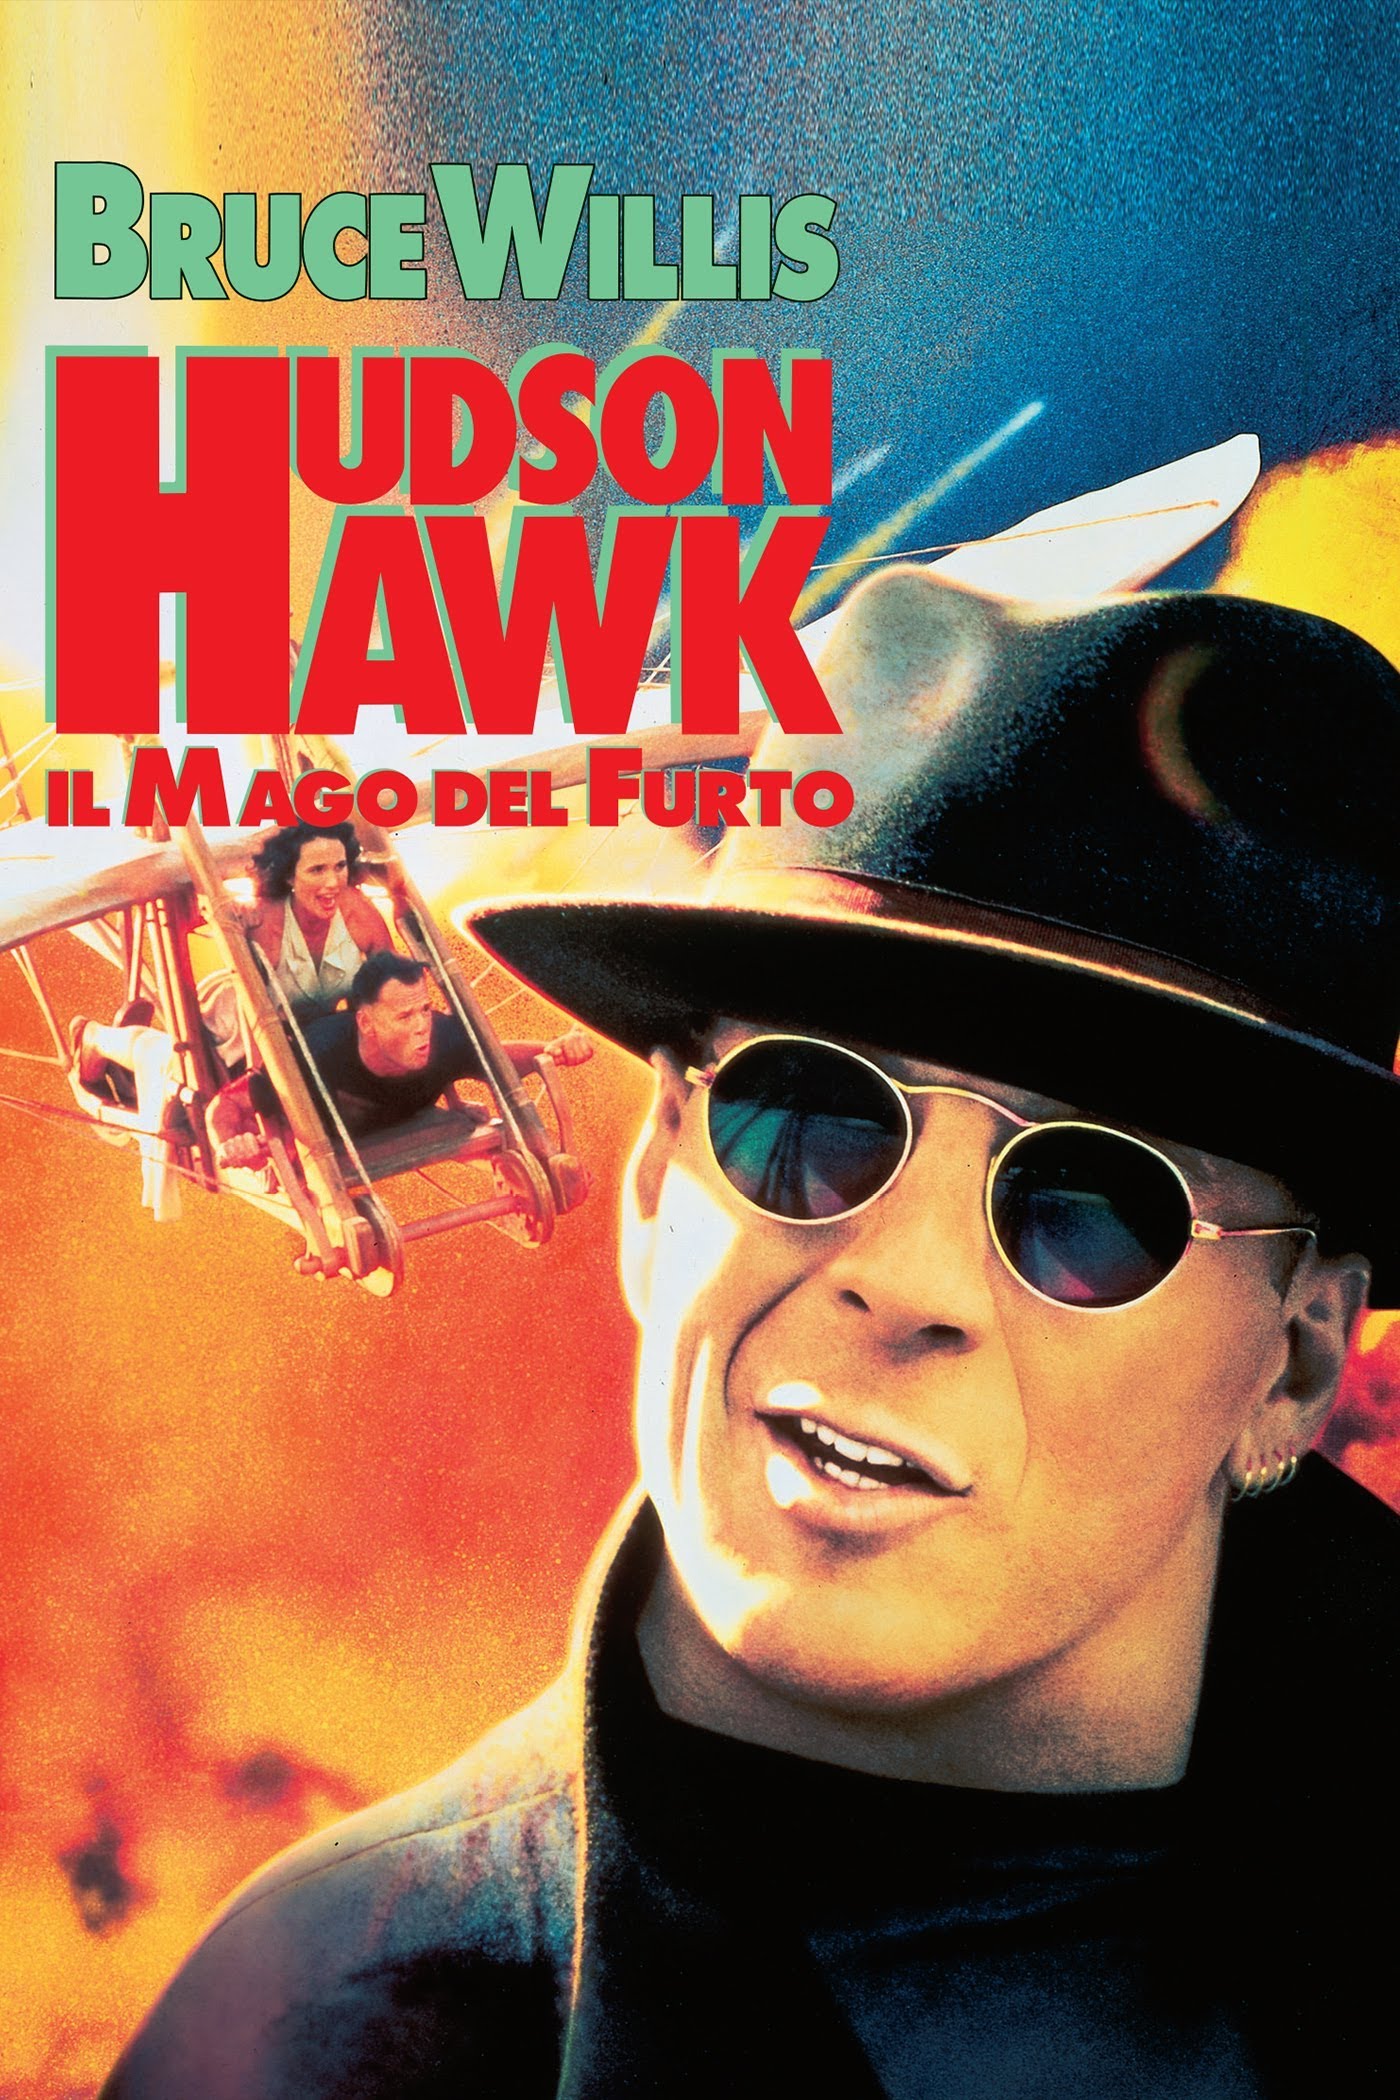 Hudson Hawk – Il mago del furto [HD] (1991)